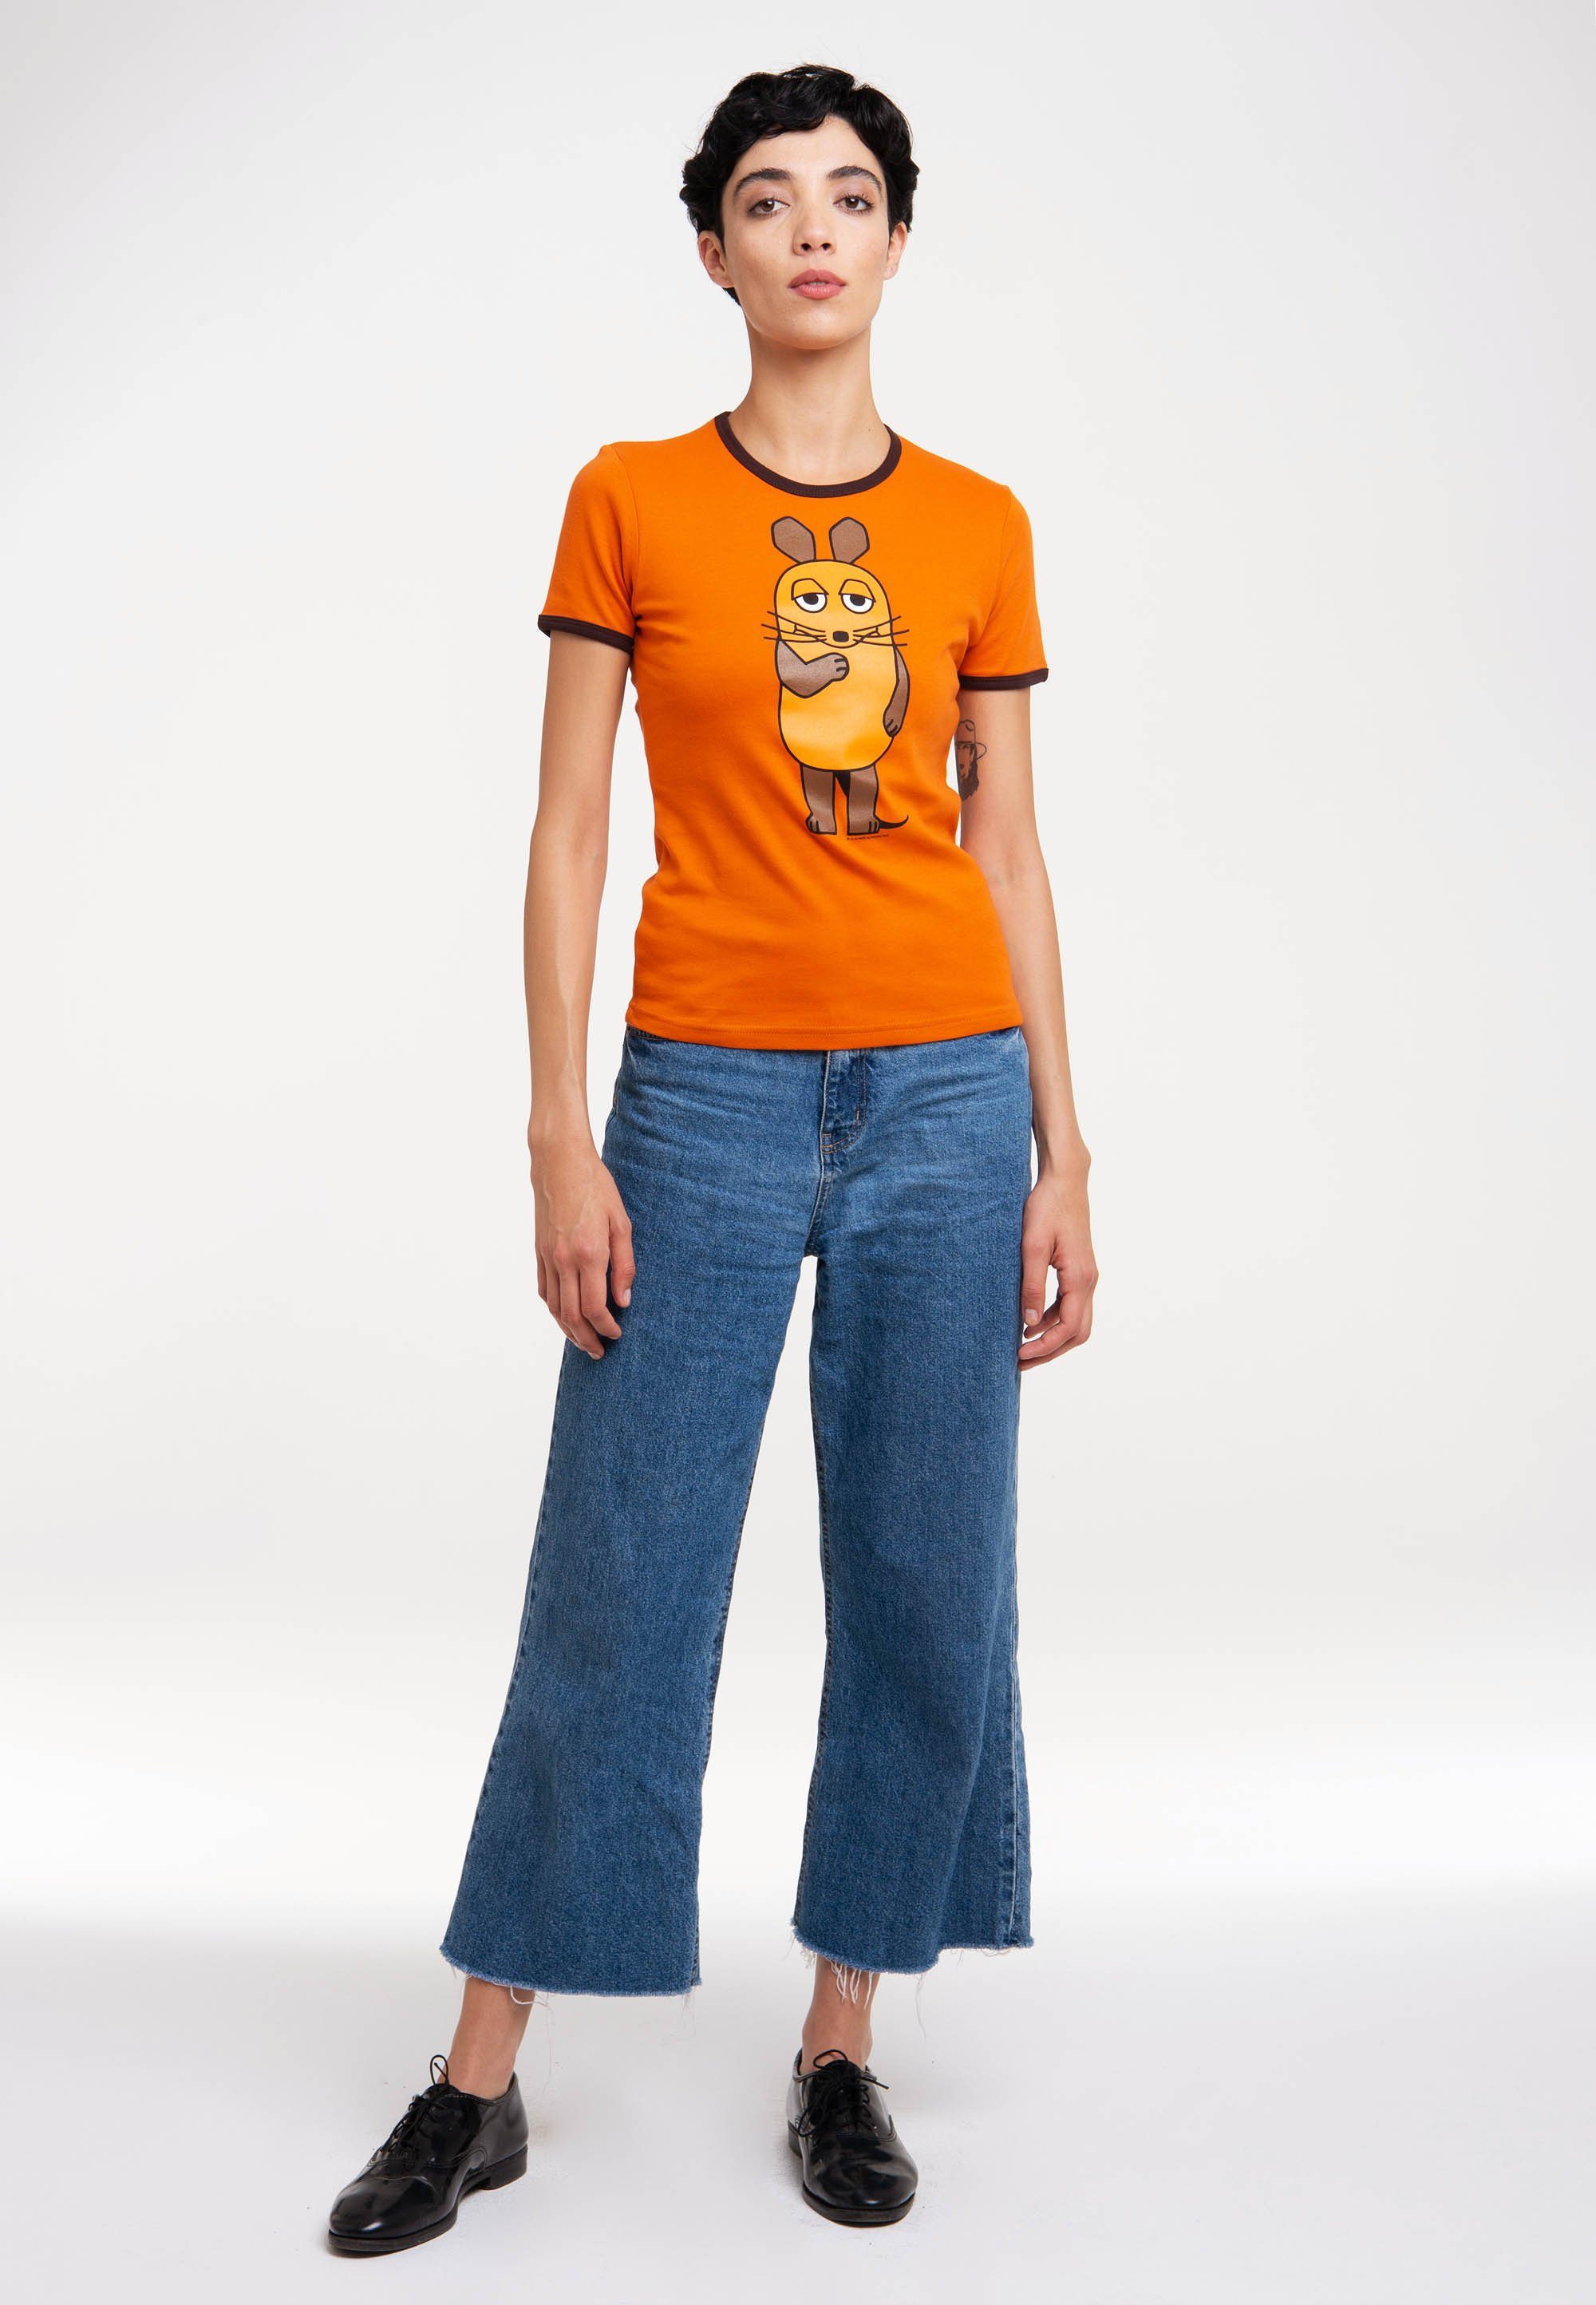 LOGOSHIRT T-Shirt Die Sendung mit Die Maus lizenziertem - der mit orange-dunkelbraun Print Maus